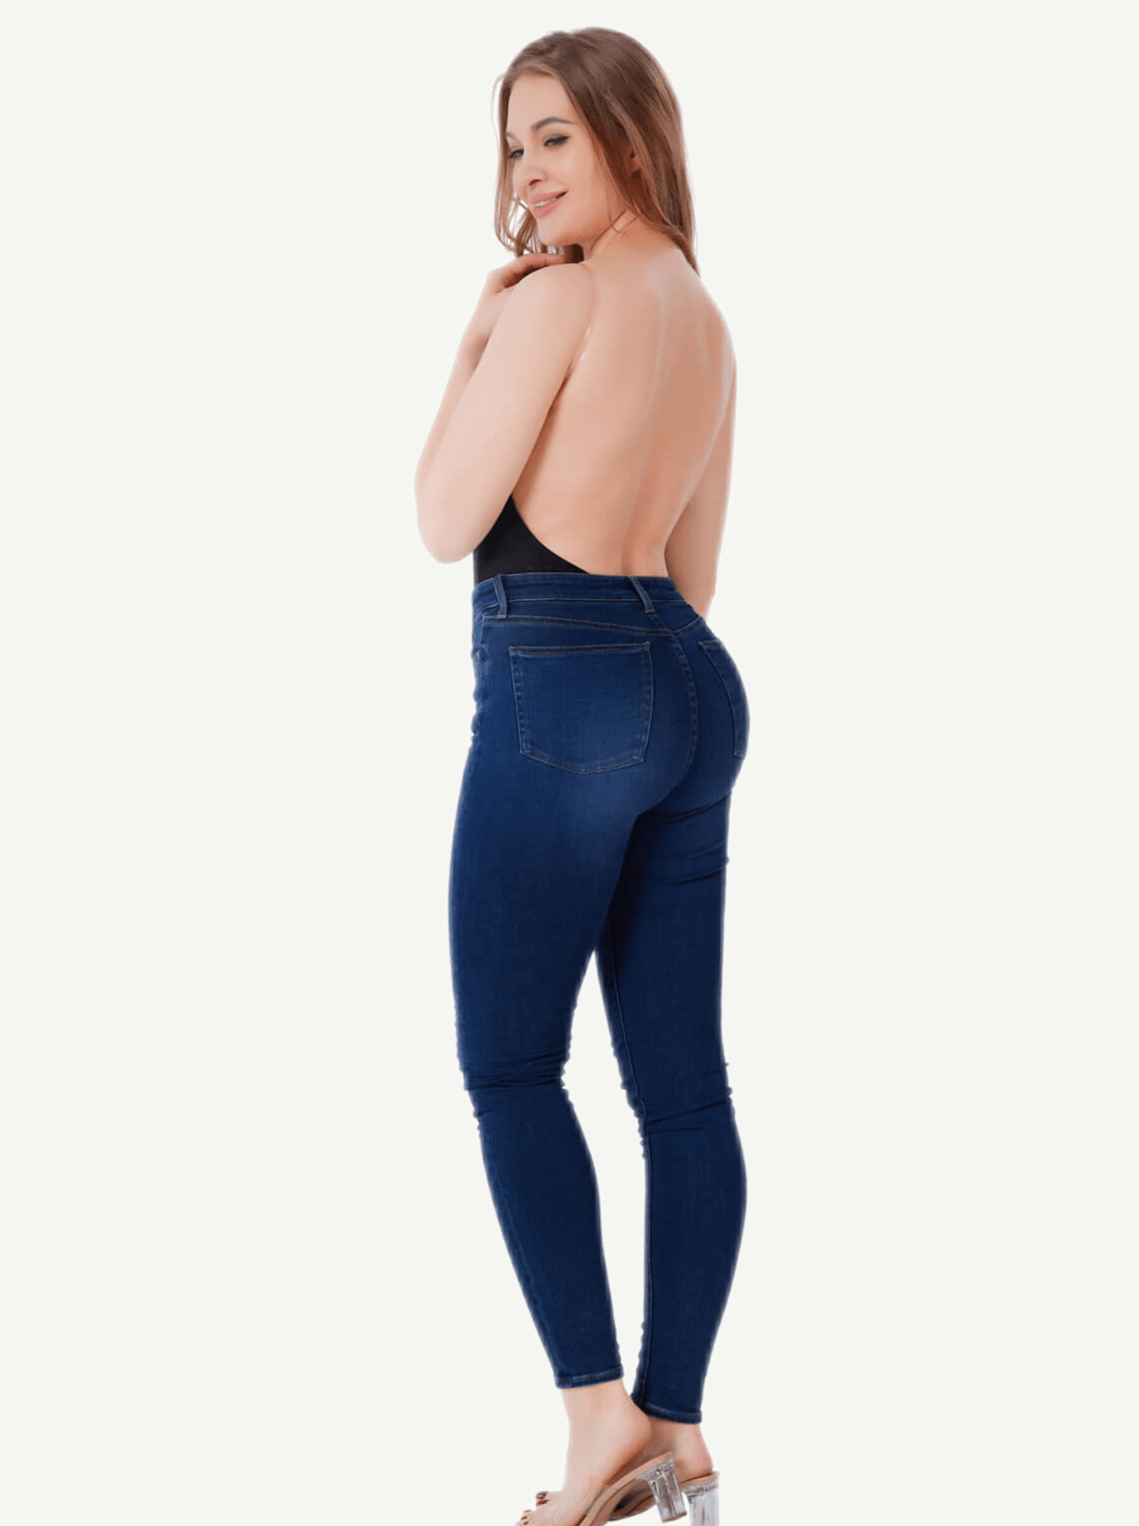 Wholesale One-piece Deep V Necklines Lace Thong Bodysuit